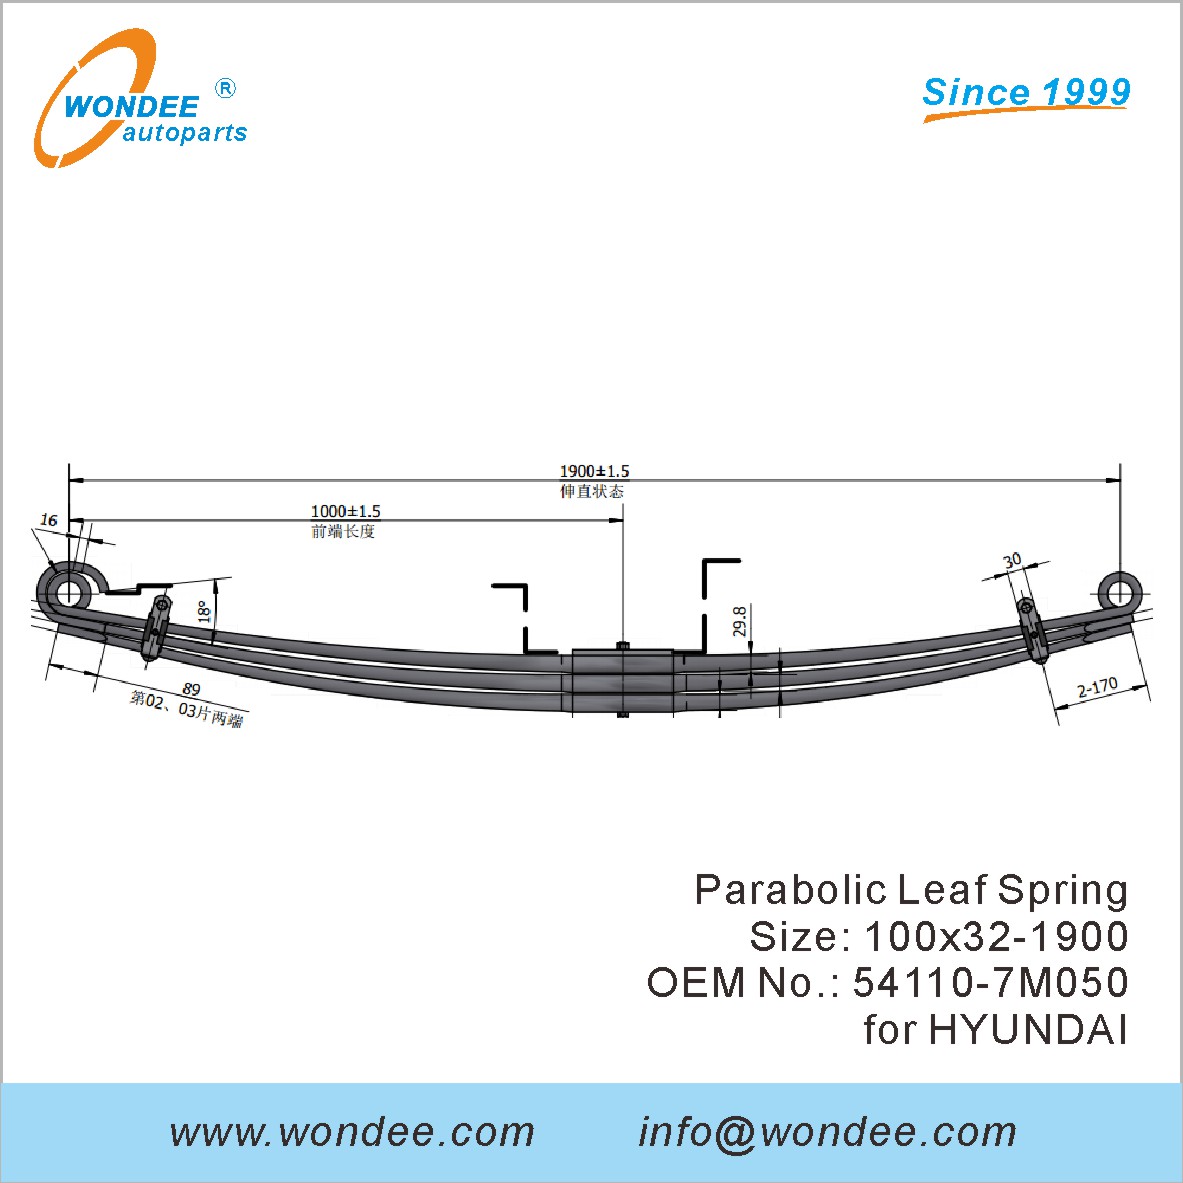 WONDEE heavy duty parabolic Leaf Spring OEM 54110-7M050 for HYUNDAI